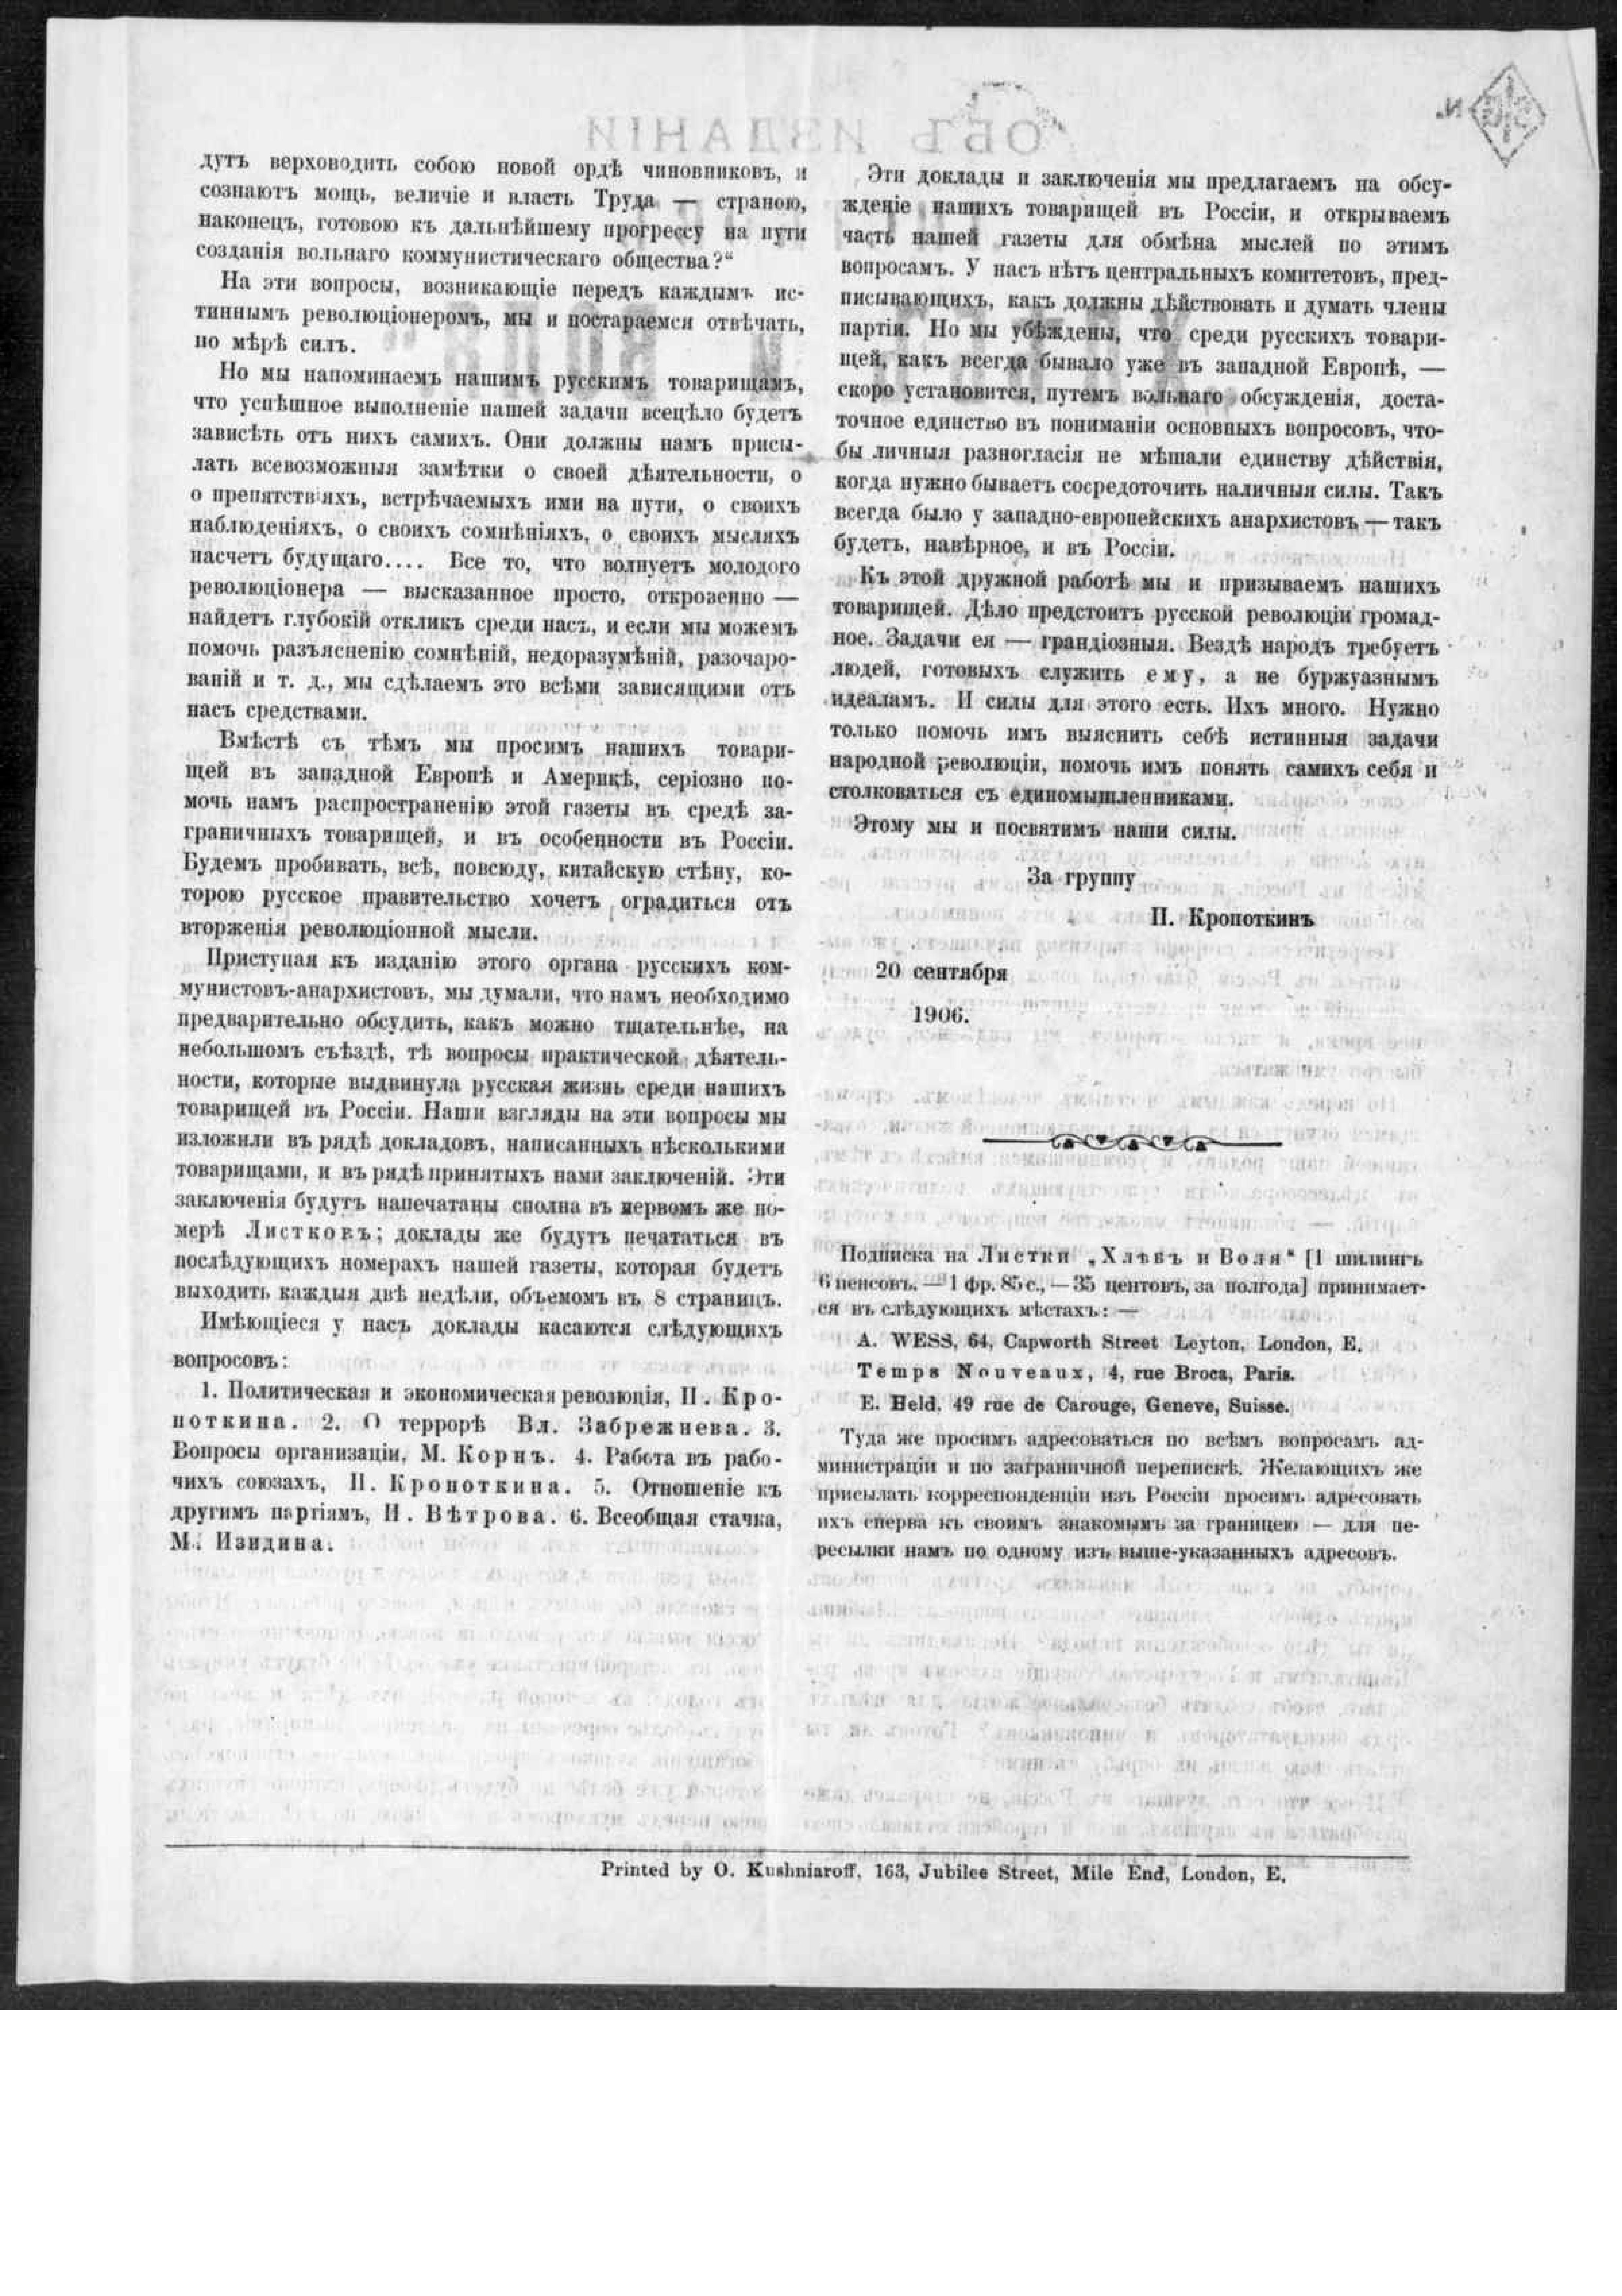 Анонс Листков "Хлеб и Воля", обратная сторона, 1906, (IISH 1001-2684)